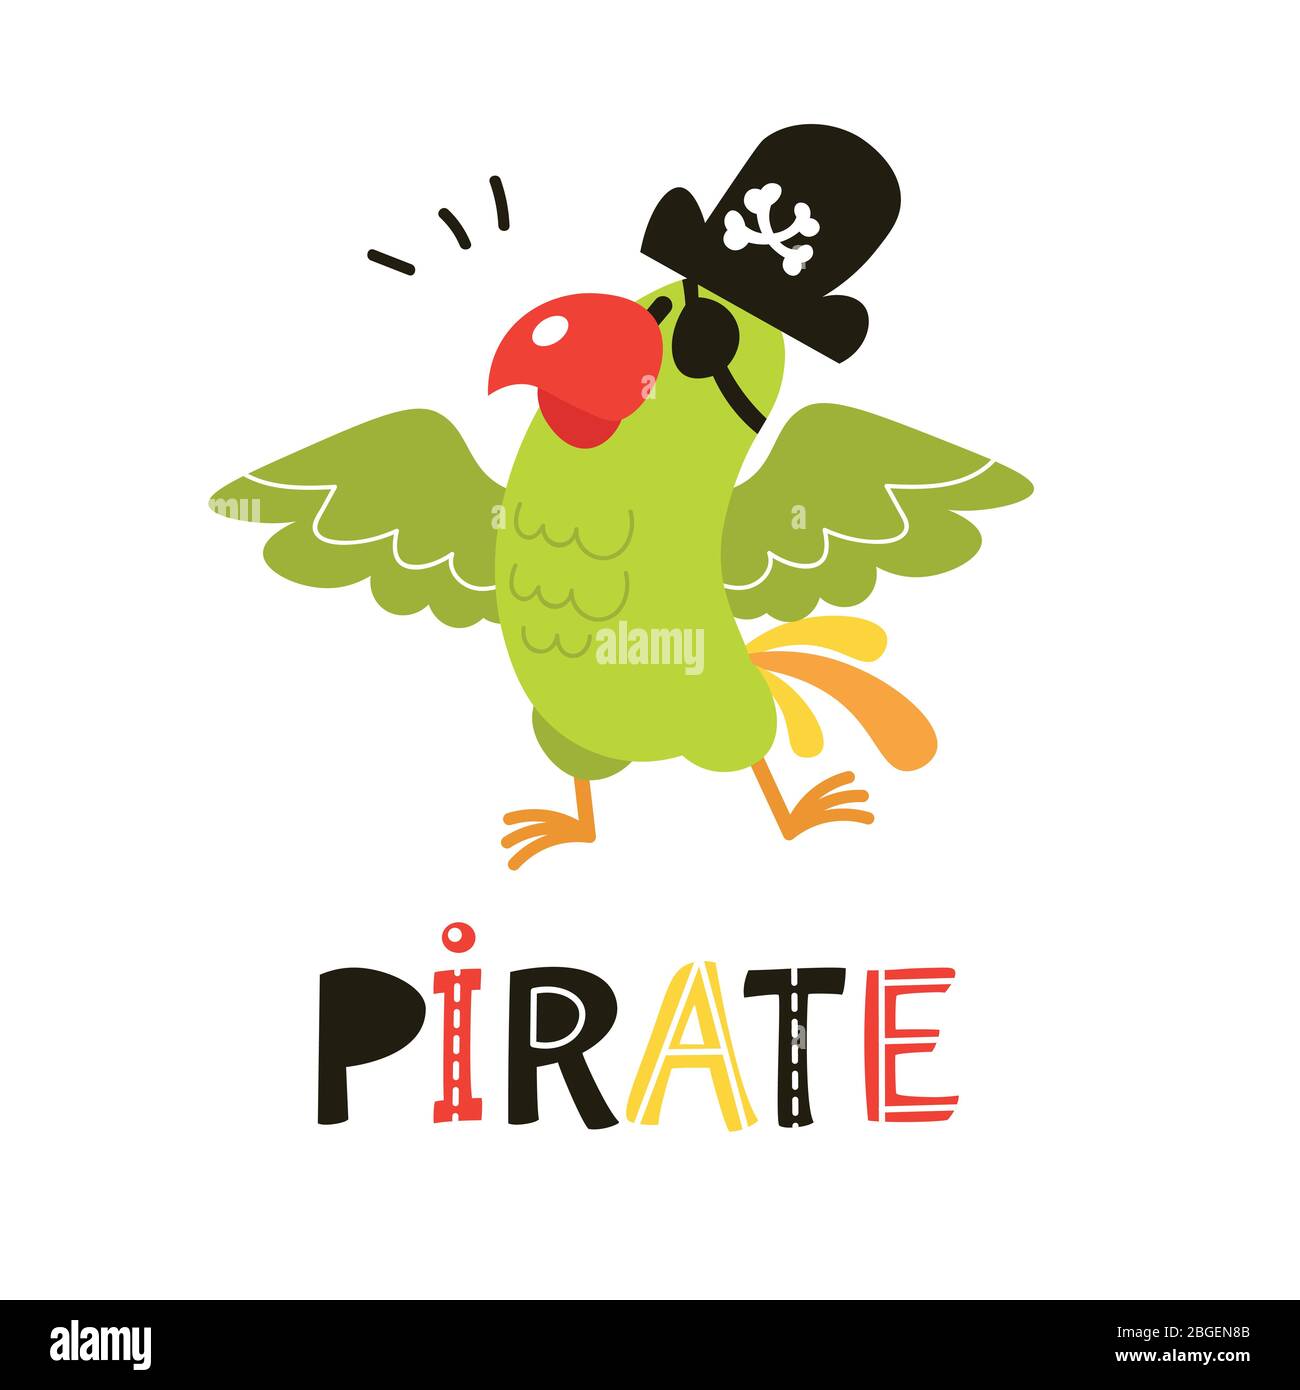 Niedlichen Cartoon Piraten Papagei. Sammlung von liebenswerten Piraten auf weißem Hintergrund isoliert Stock Vektor